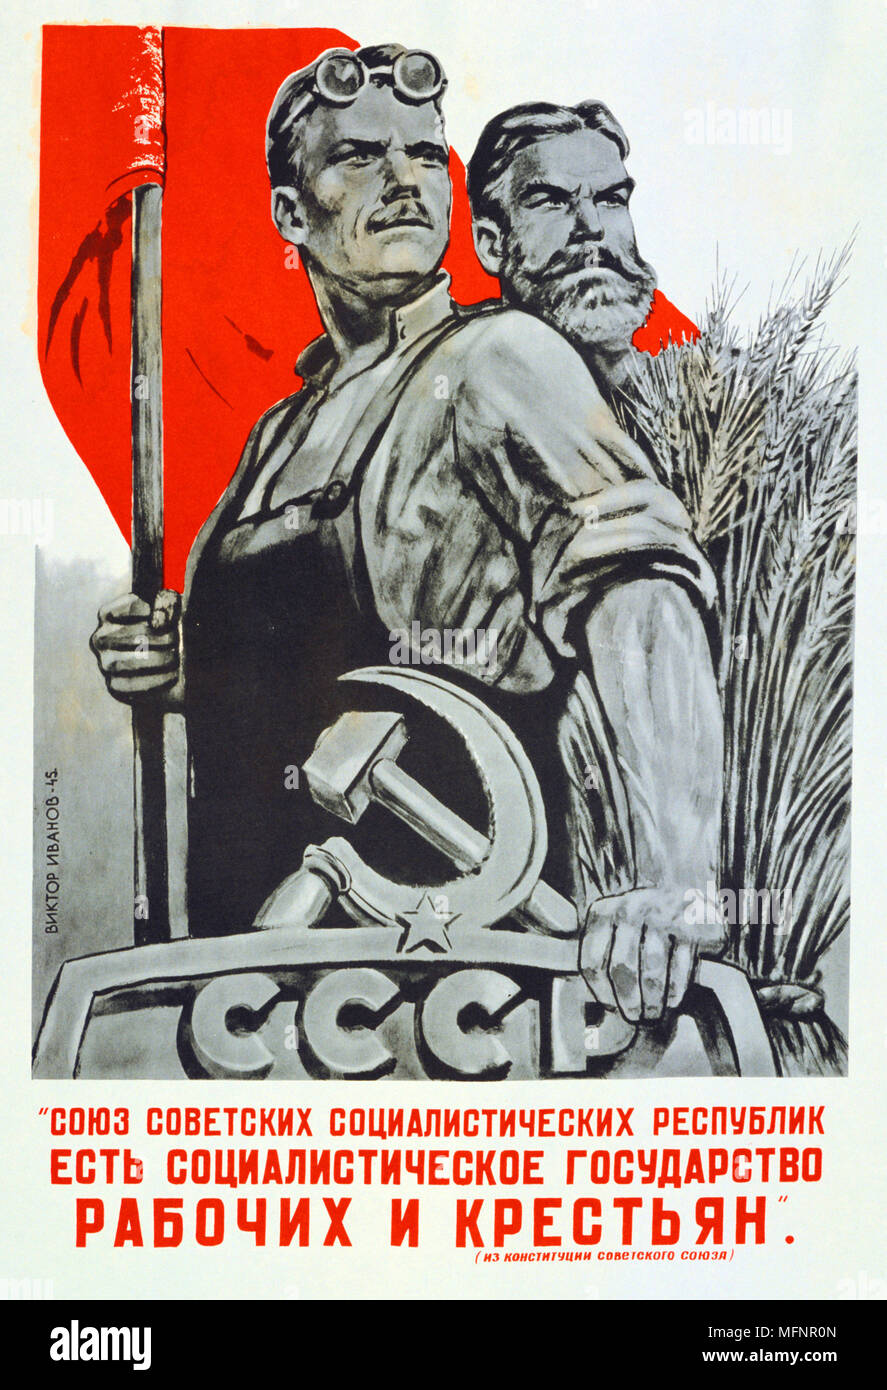 Die UdSSR ist der sozialistische Staat für Arbeiter und Bauernstaat, 1945. Sowjetische Propaganda-Plakat. Russlands Kommunismus Kommunist Stockfoto